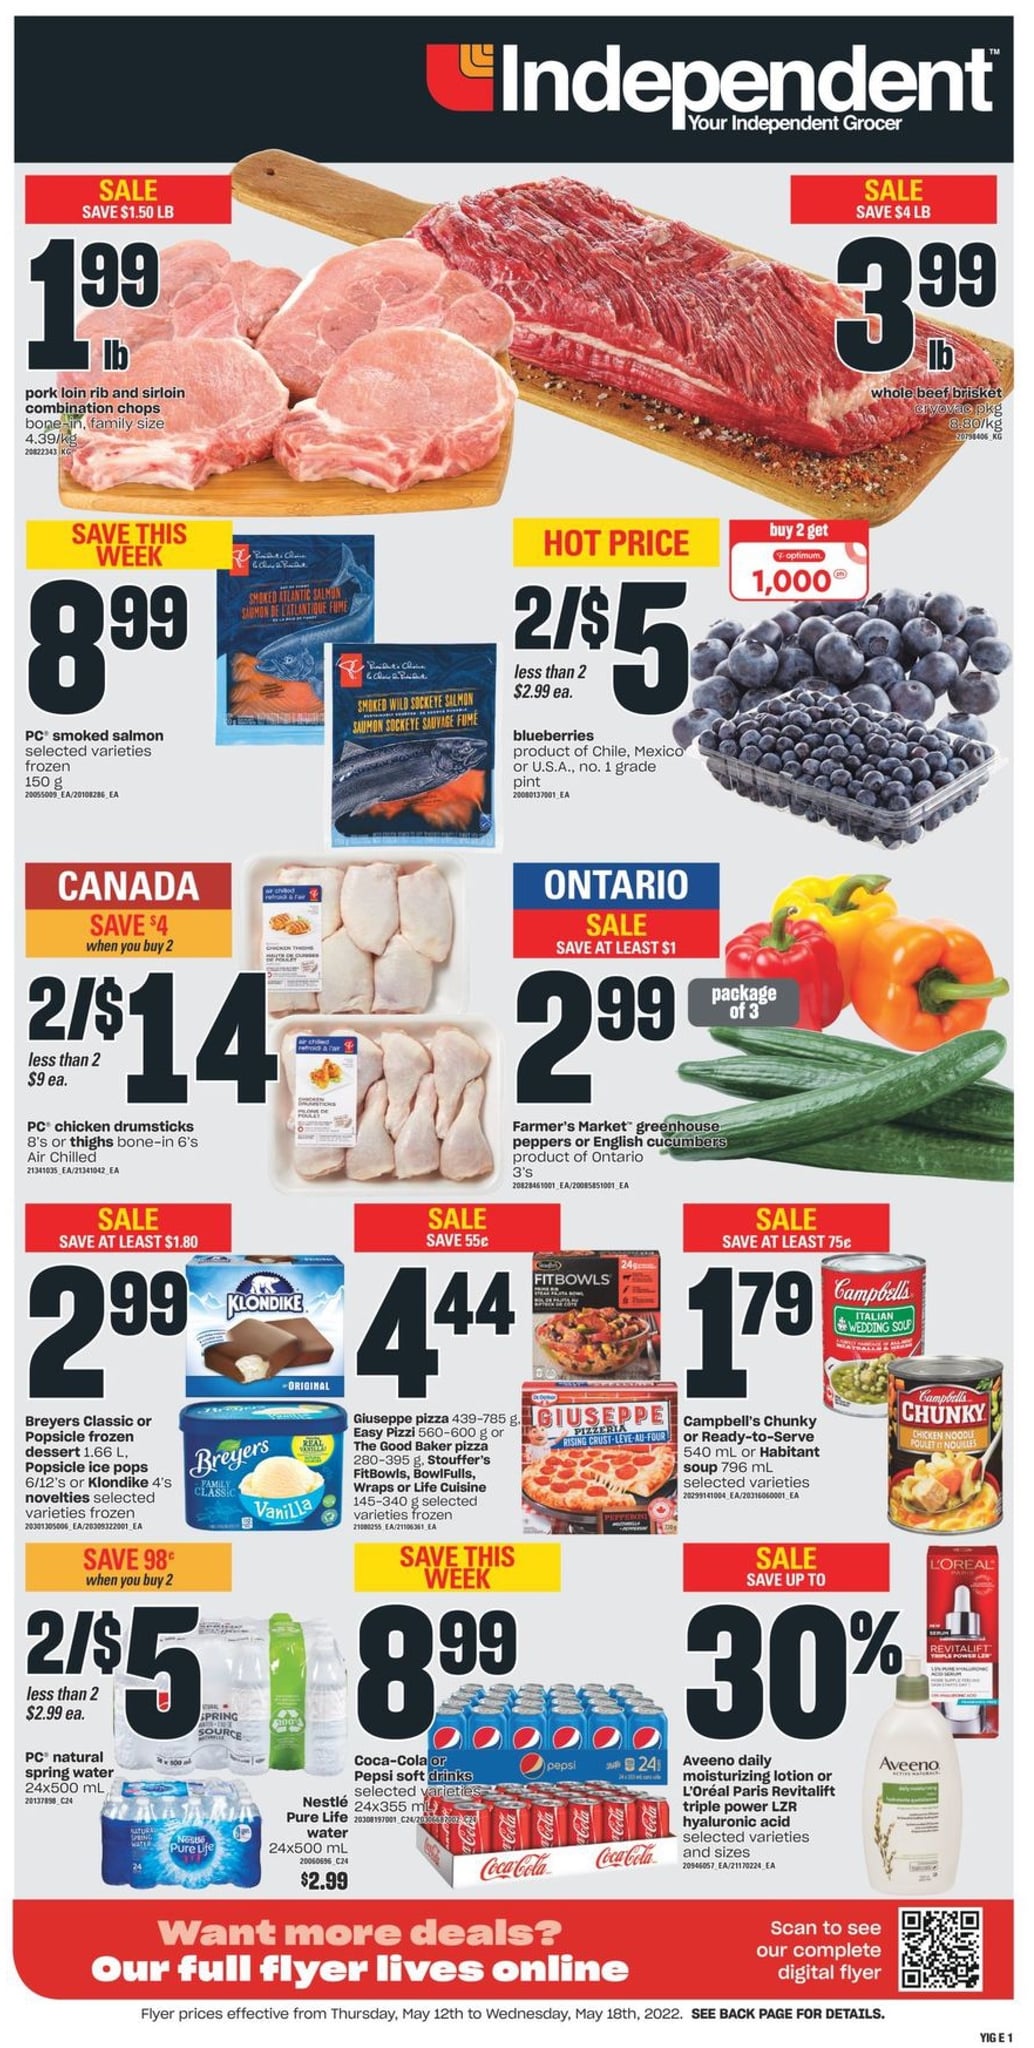 Independent Ontario - Weekly Flyer Specials